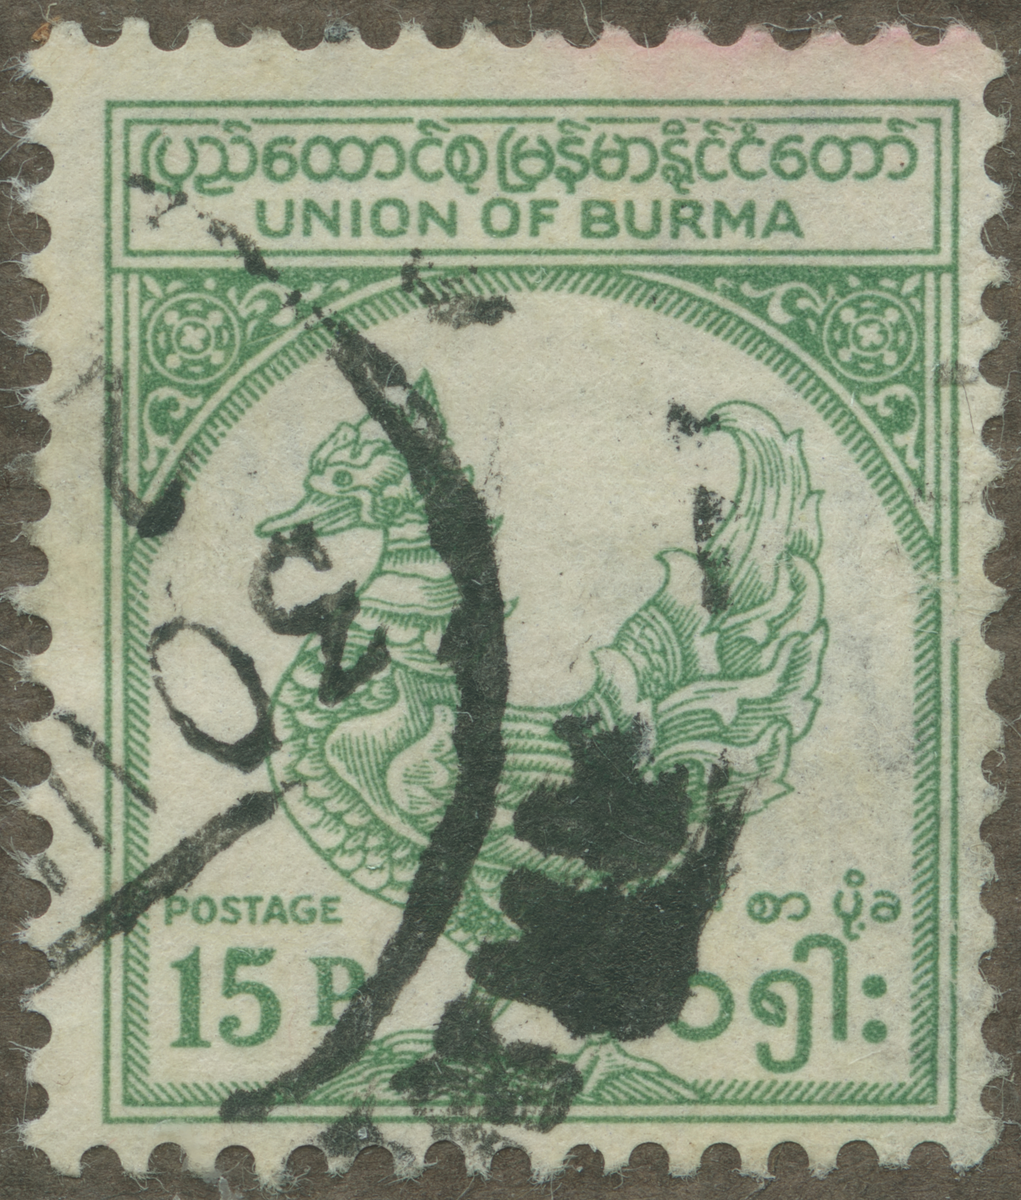 Frimärke ur Gösta Bodmans filatelistiska motivsamling, påbörjad 1950.
Frimärke från Birma, 1949. Motiv av Mytologisk Fågel Birma